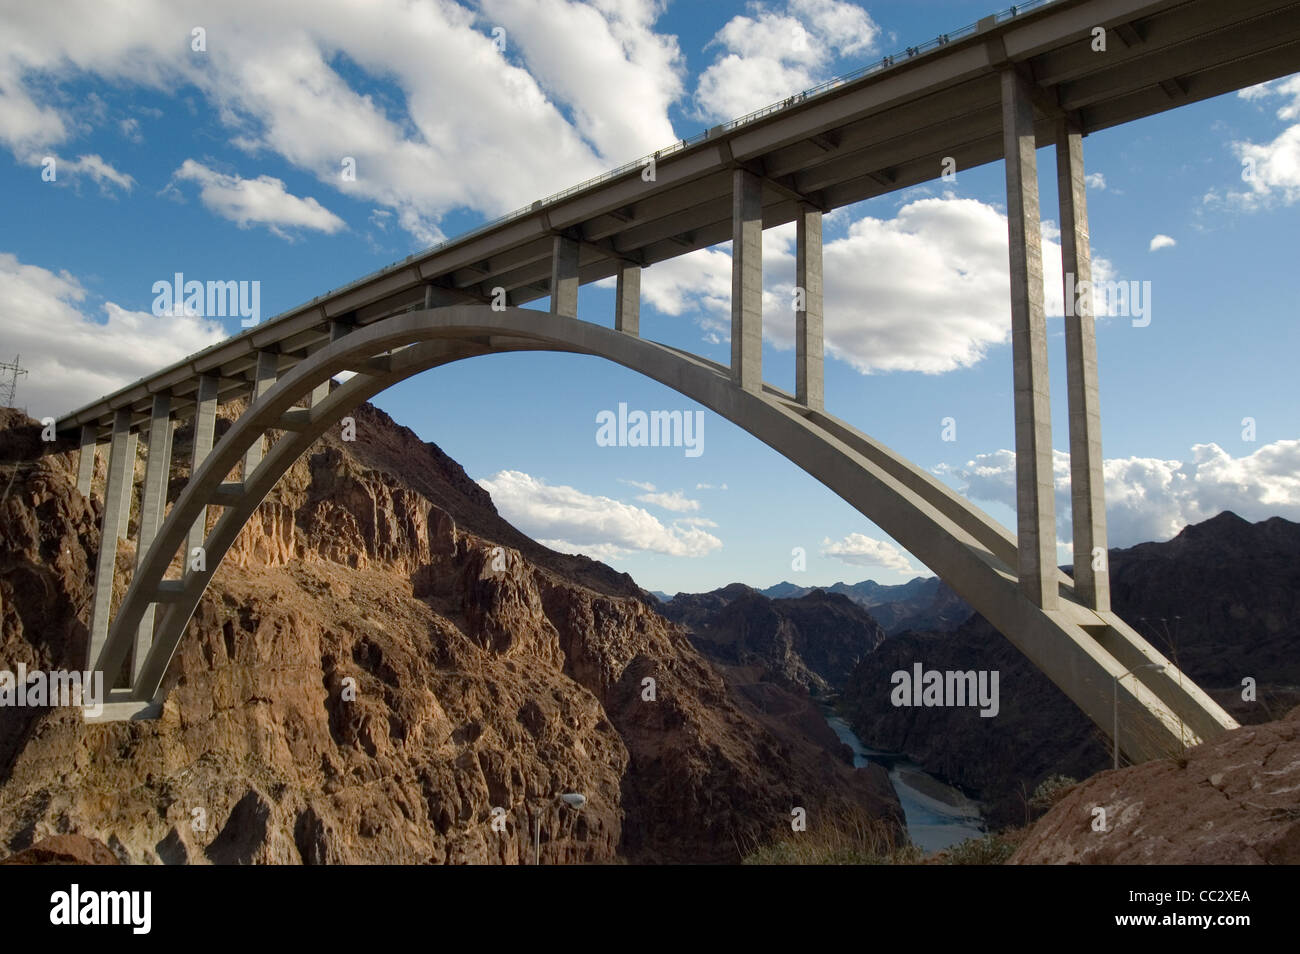 Hoover Damn pont de Nevada USA. Un bel exemple de conception de ponts et de l'architecture. Prises le 8 novembre 2010. Banque D'Images